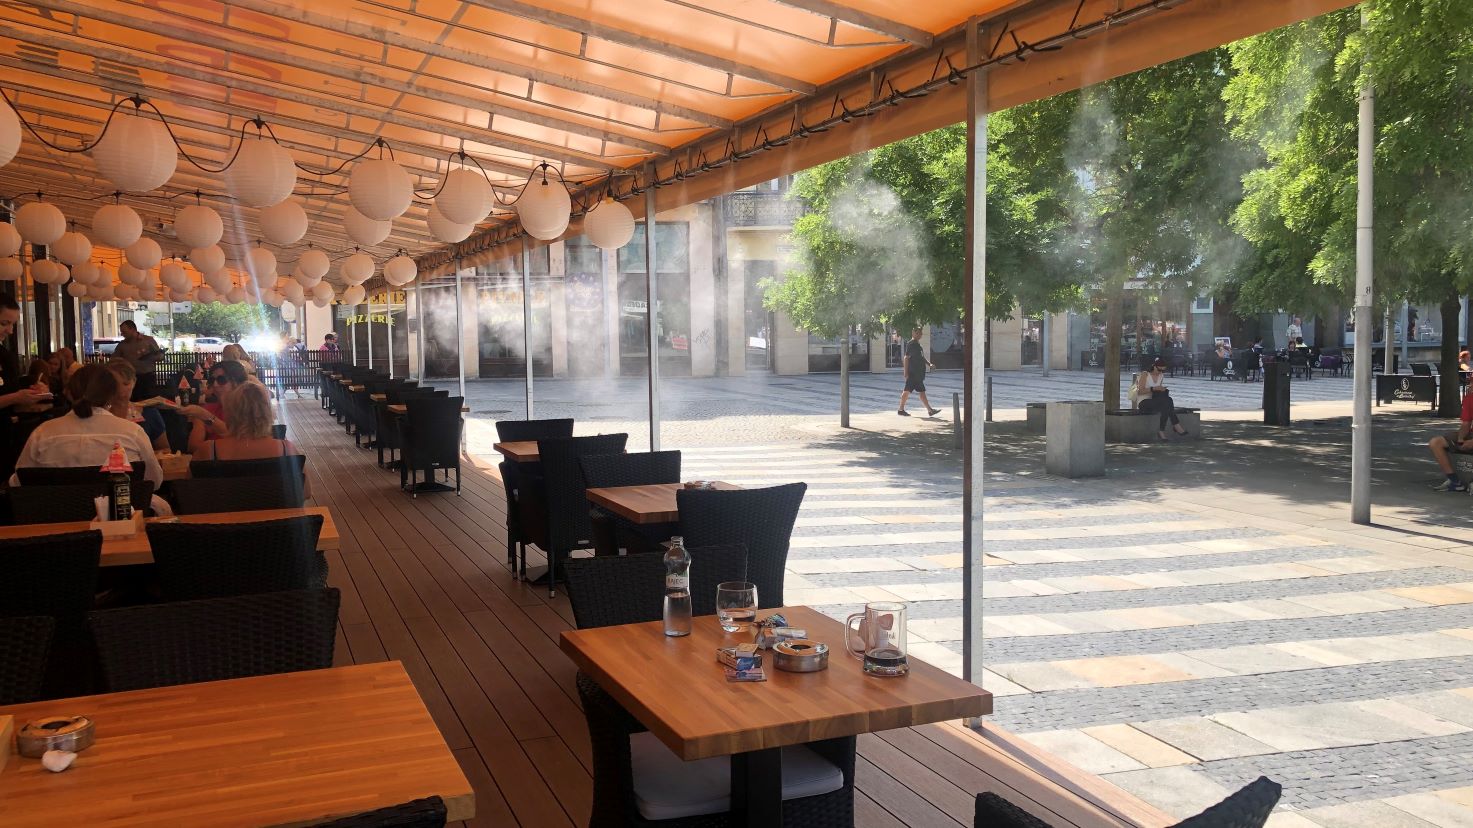 Ochlazování vzduchu na terase restaurace